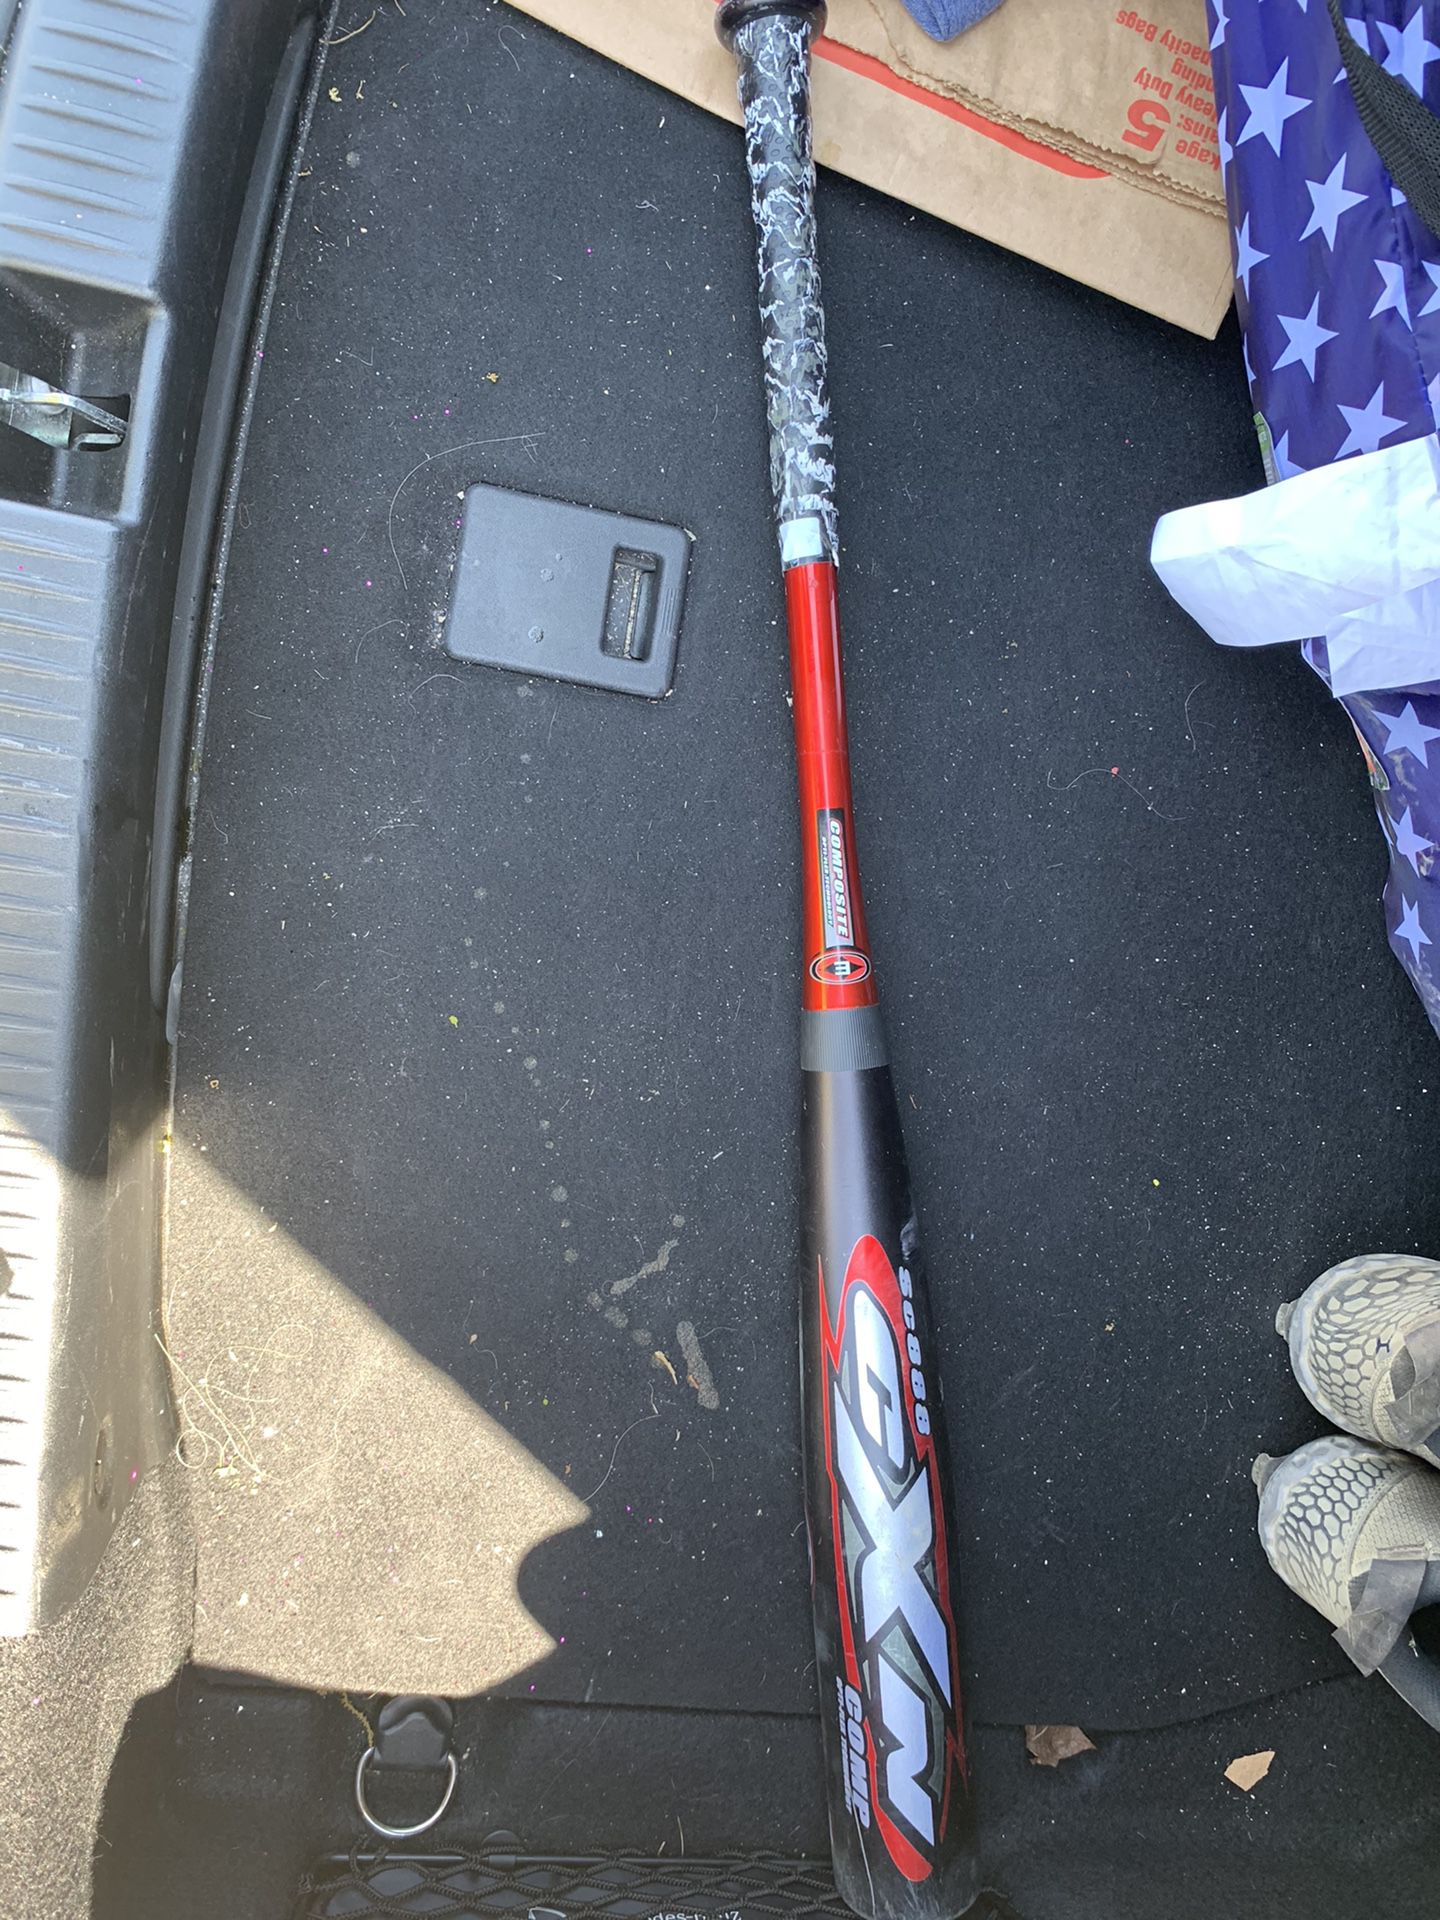 Easton CXN baseball bat